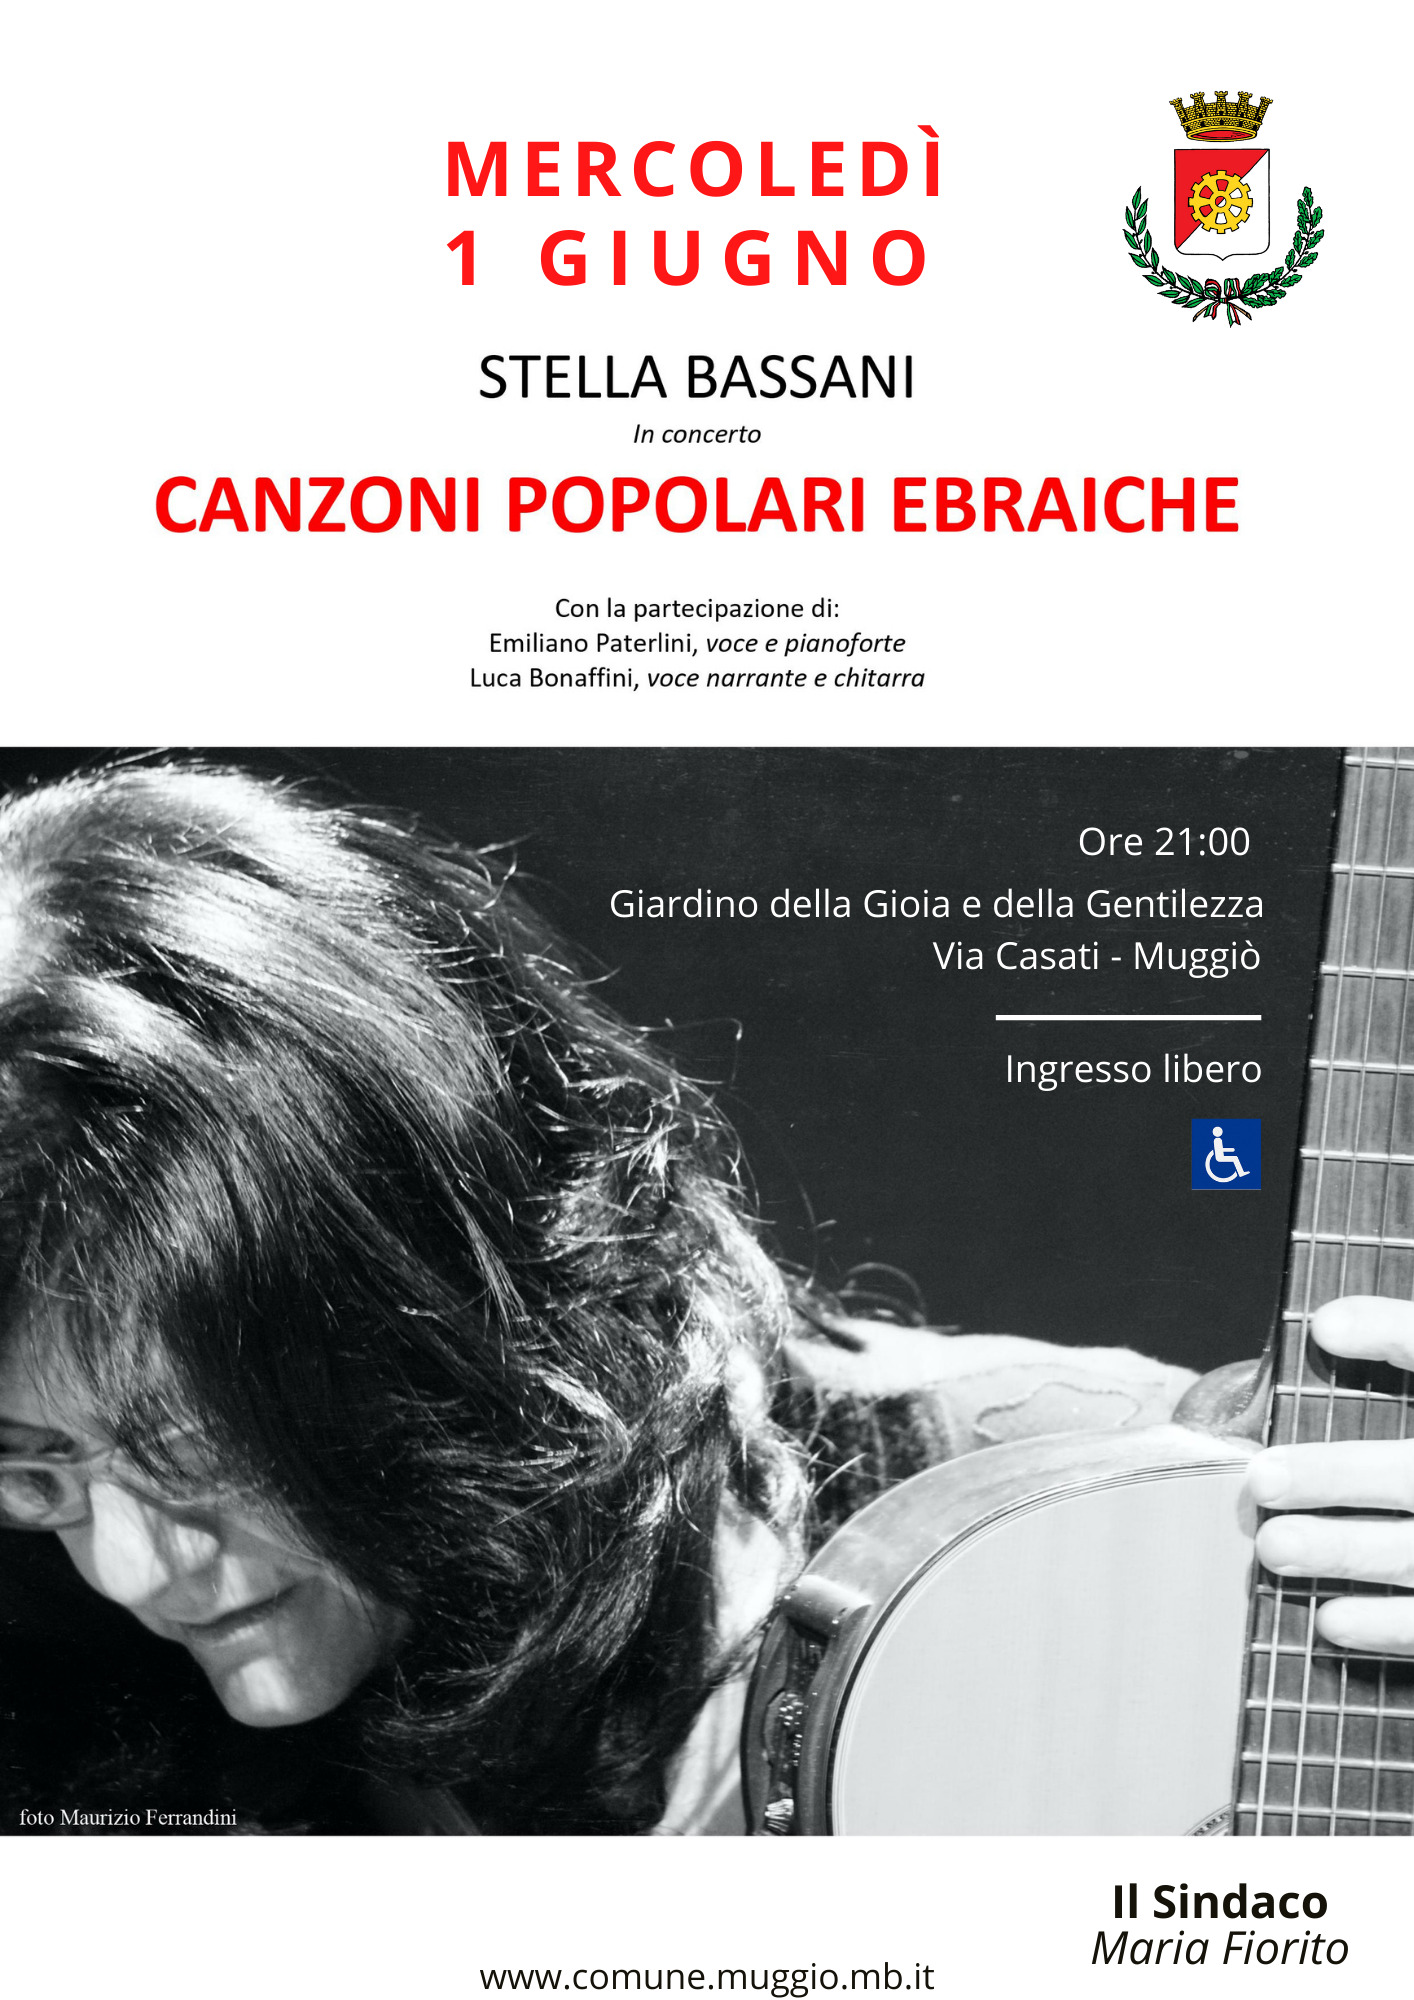 Stella Bassani - CANTIAMO PER LA PACE